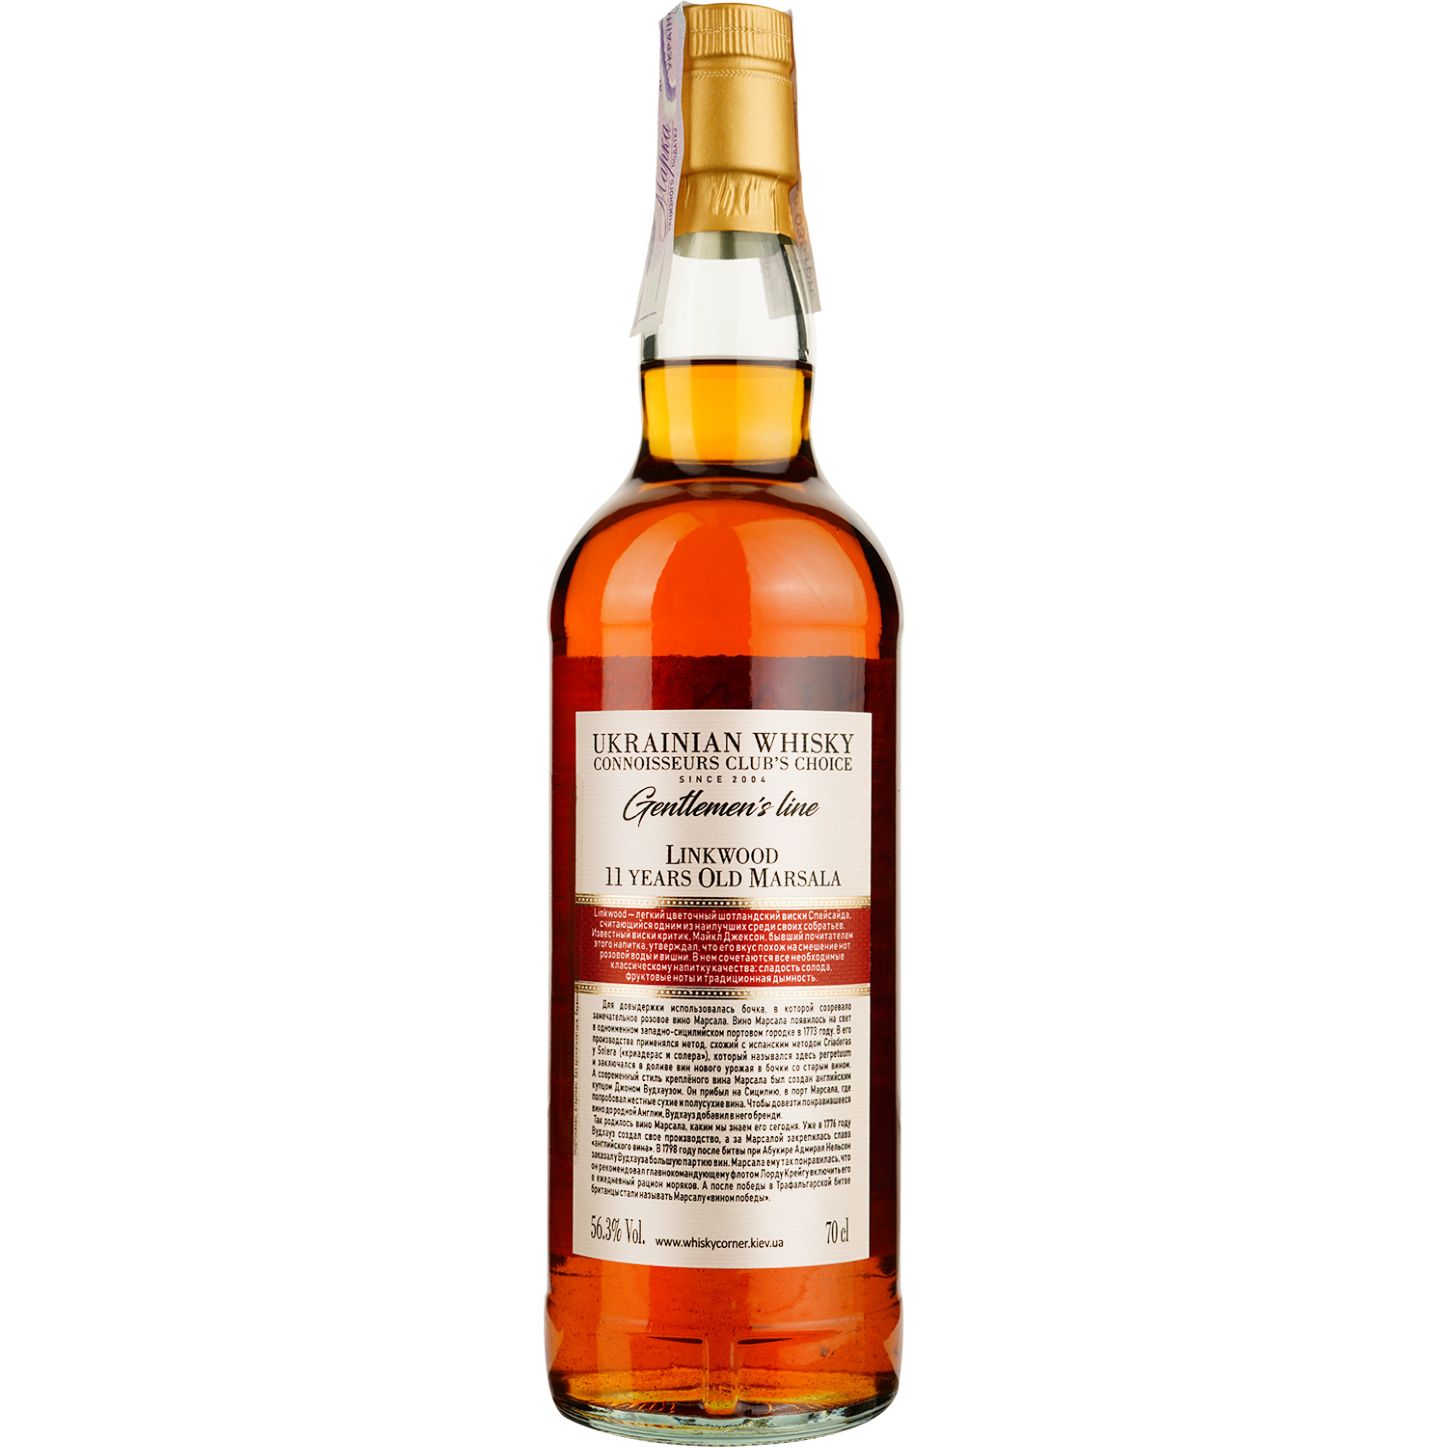 Віскі Linkwood 11 Years Old Marsala Single Malt Scotch Whisky, у подарунковій упаковці, 56,3%, 0,7 л - фото 4